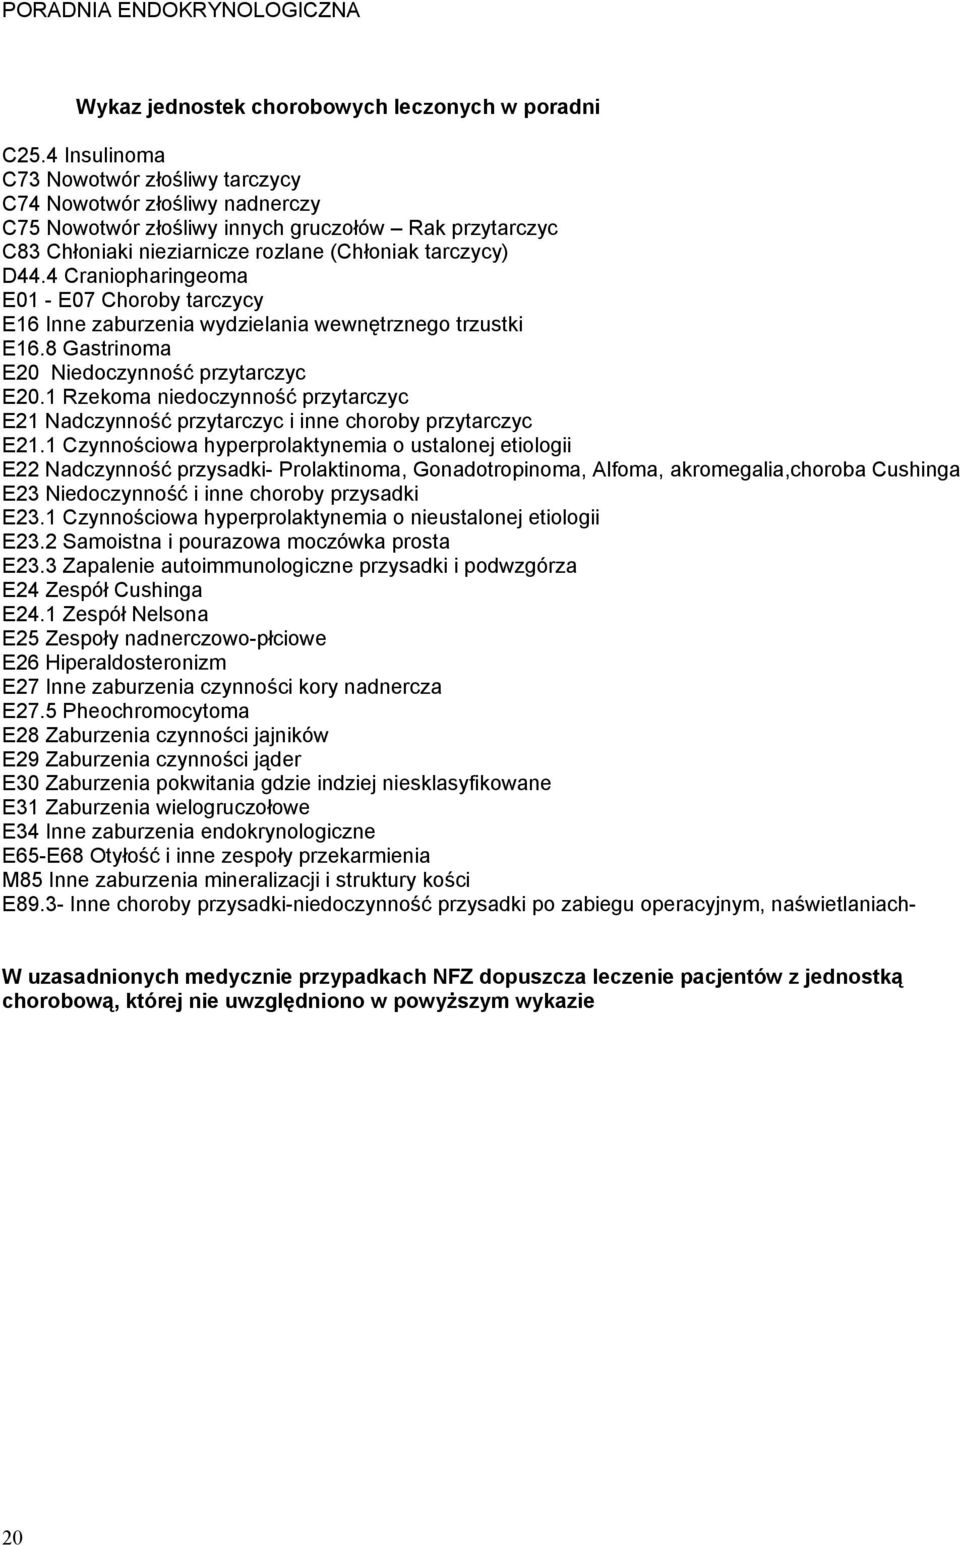 4 Craniopharingeoma E01 - E07 Choroby tarczycy E16 Inne zaburzenia wydzielania wewnętrznego trzustki E16.8 Gastrinoma E20 Niedoczynność przytarczyc E20.